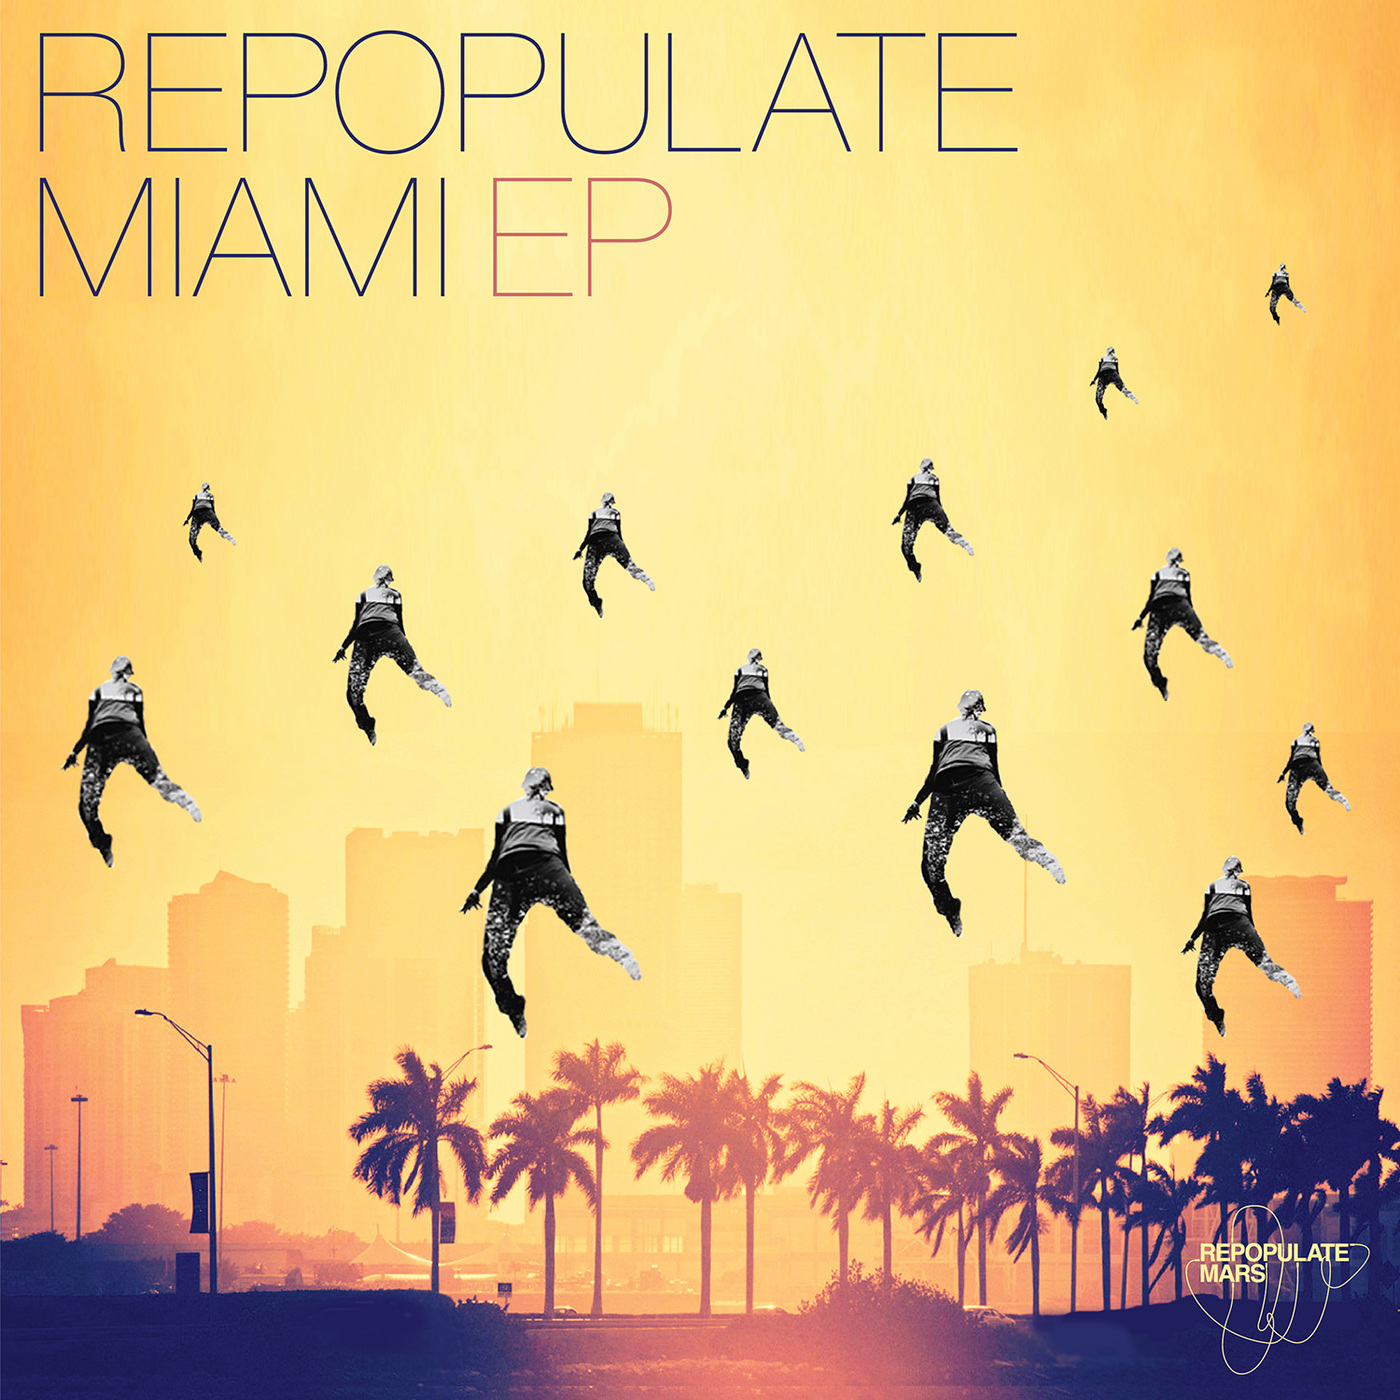 VA - Repopulate Miami EP / Repopulate Mars